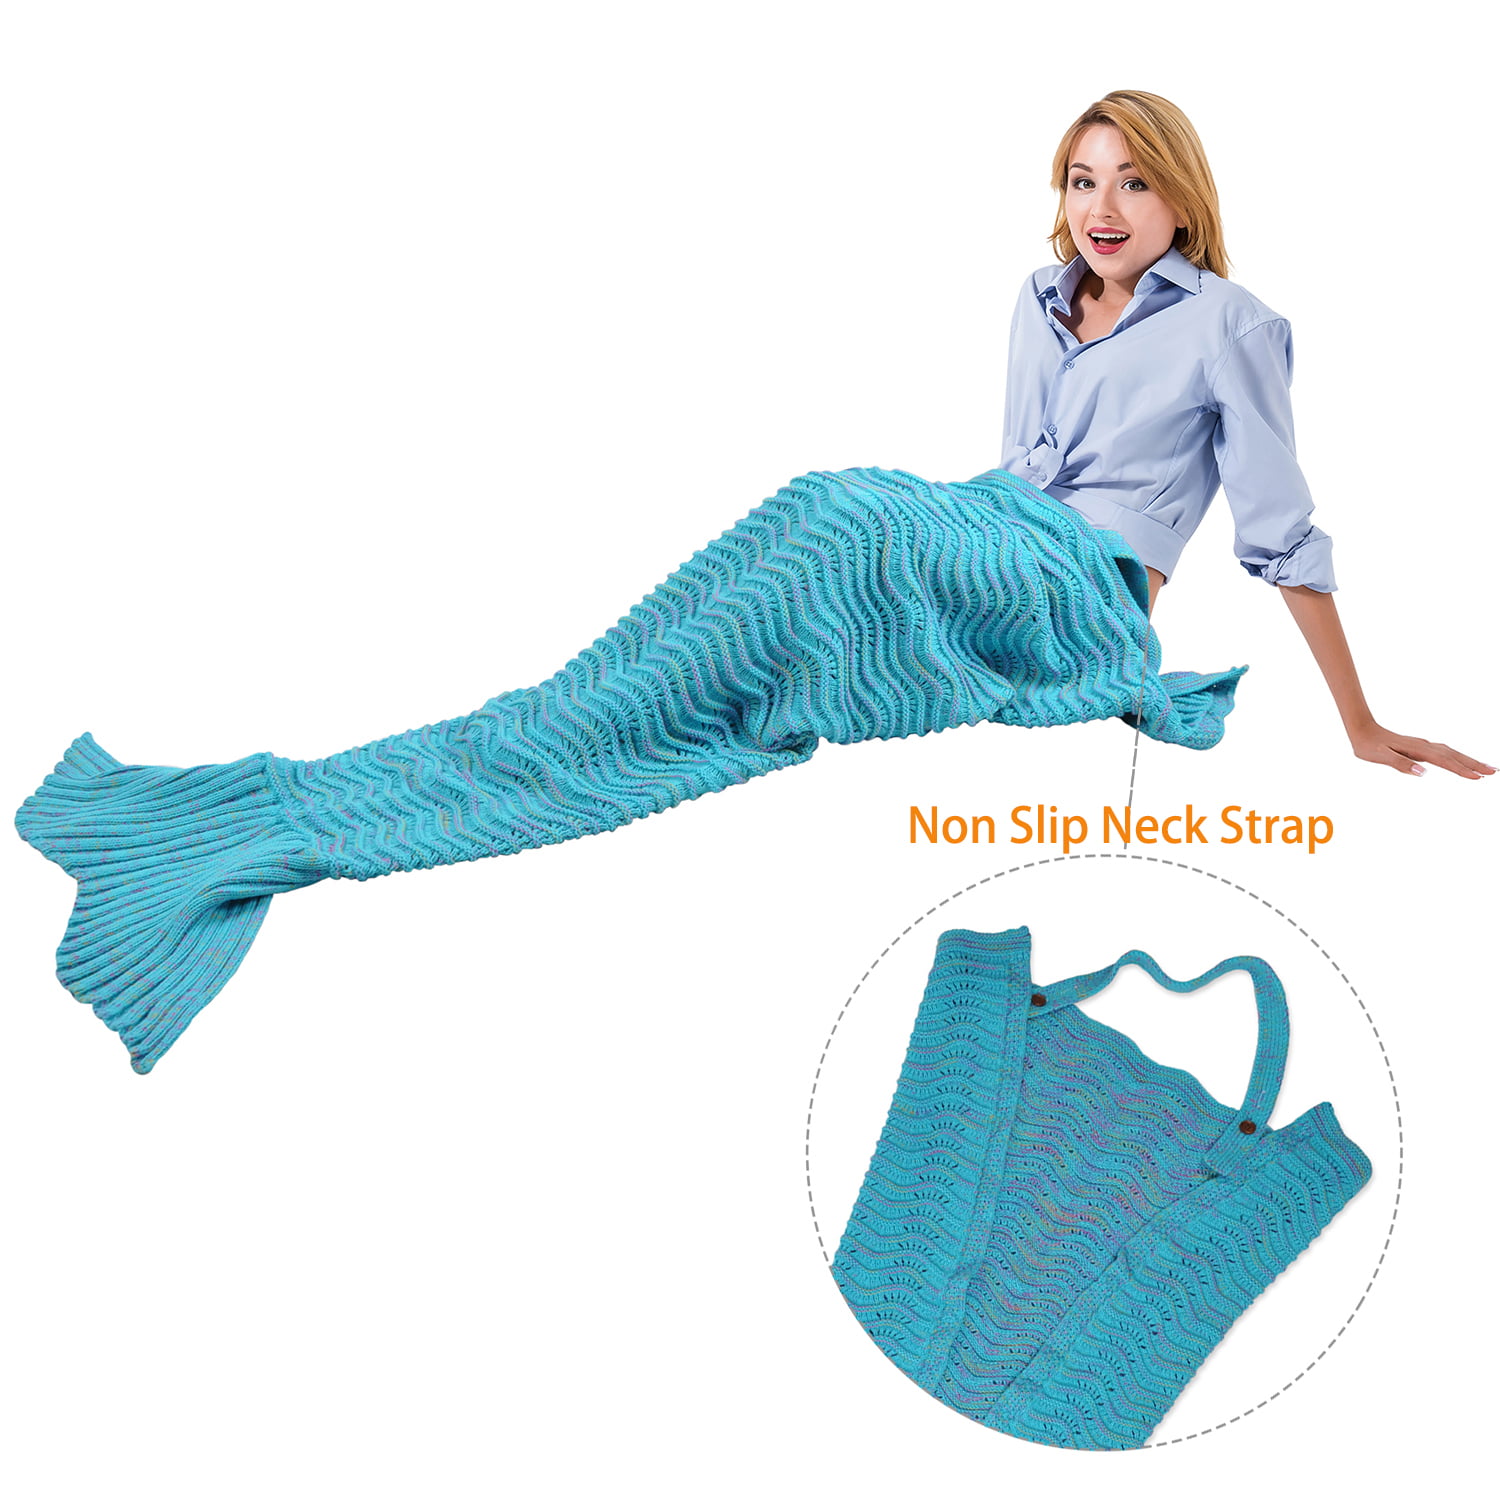 Mermaid Tail Velvet Fleece Blanket 22"X 52" Feet Pockets Soft Plush Kids Rainbow 